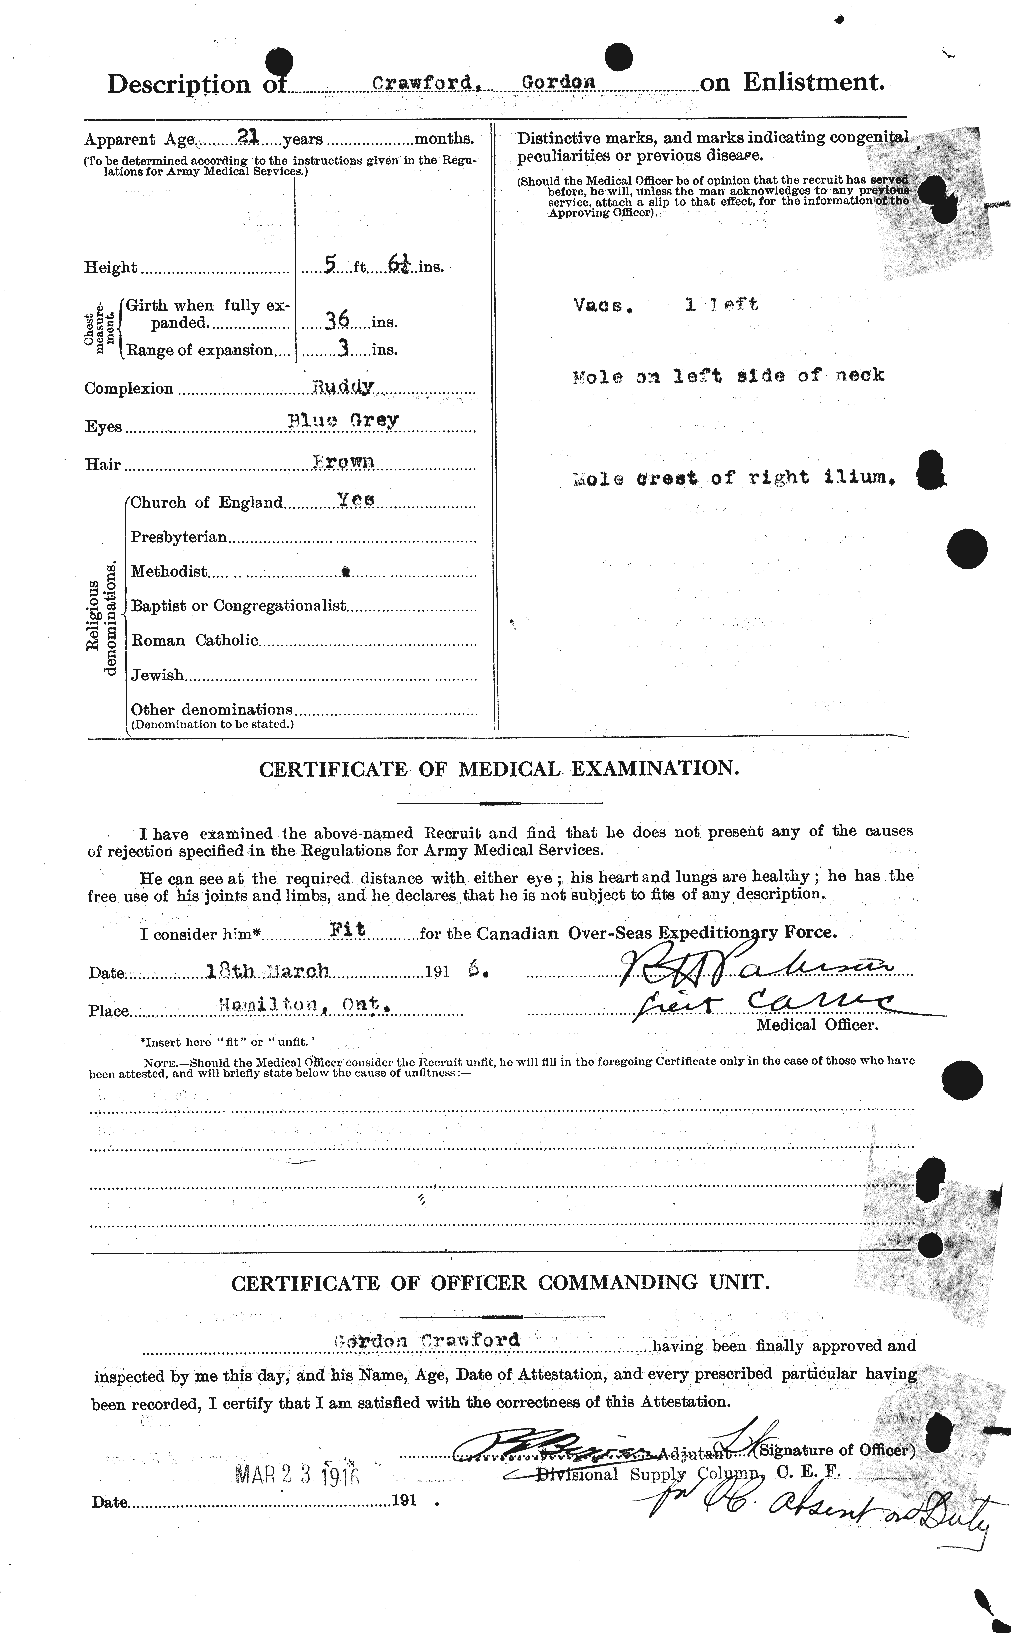 Dossiers du Personnel de la Première Guerre mondiale - CEC 060697b